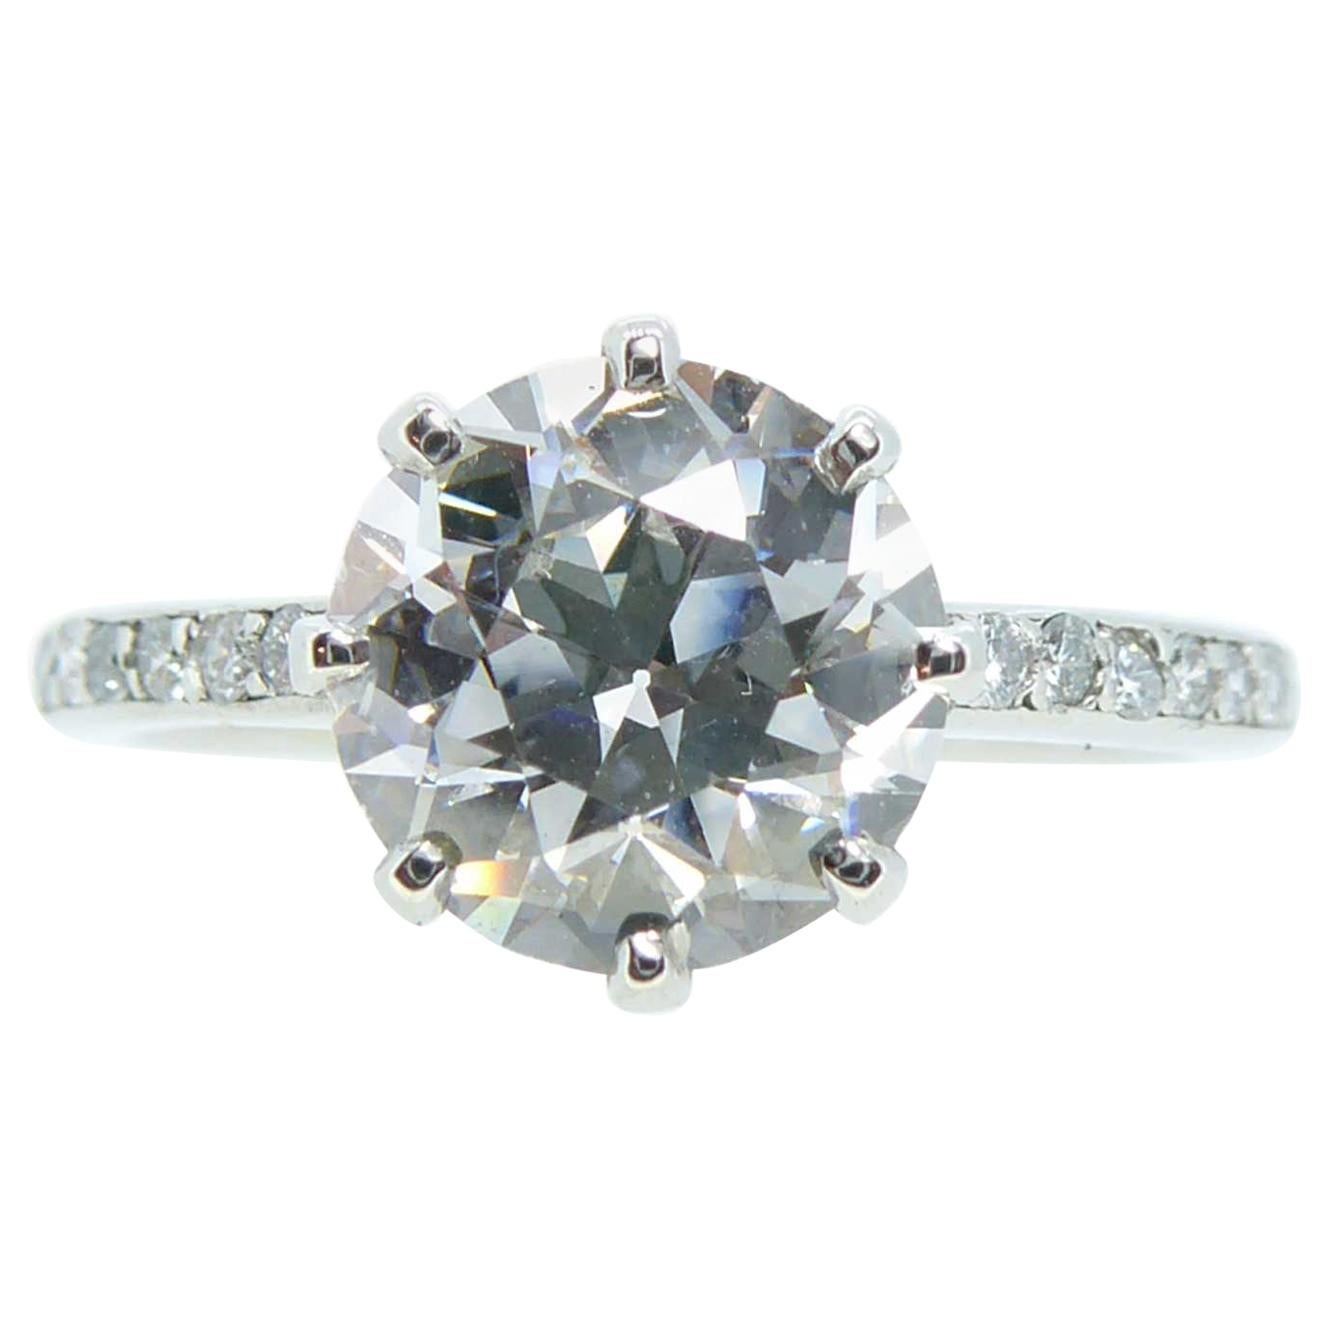 2.01 Carat Early Brilliant Cut Diamond, Platinum Solitaire Ring, circa 1940s